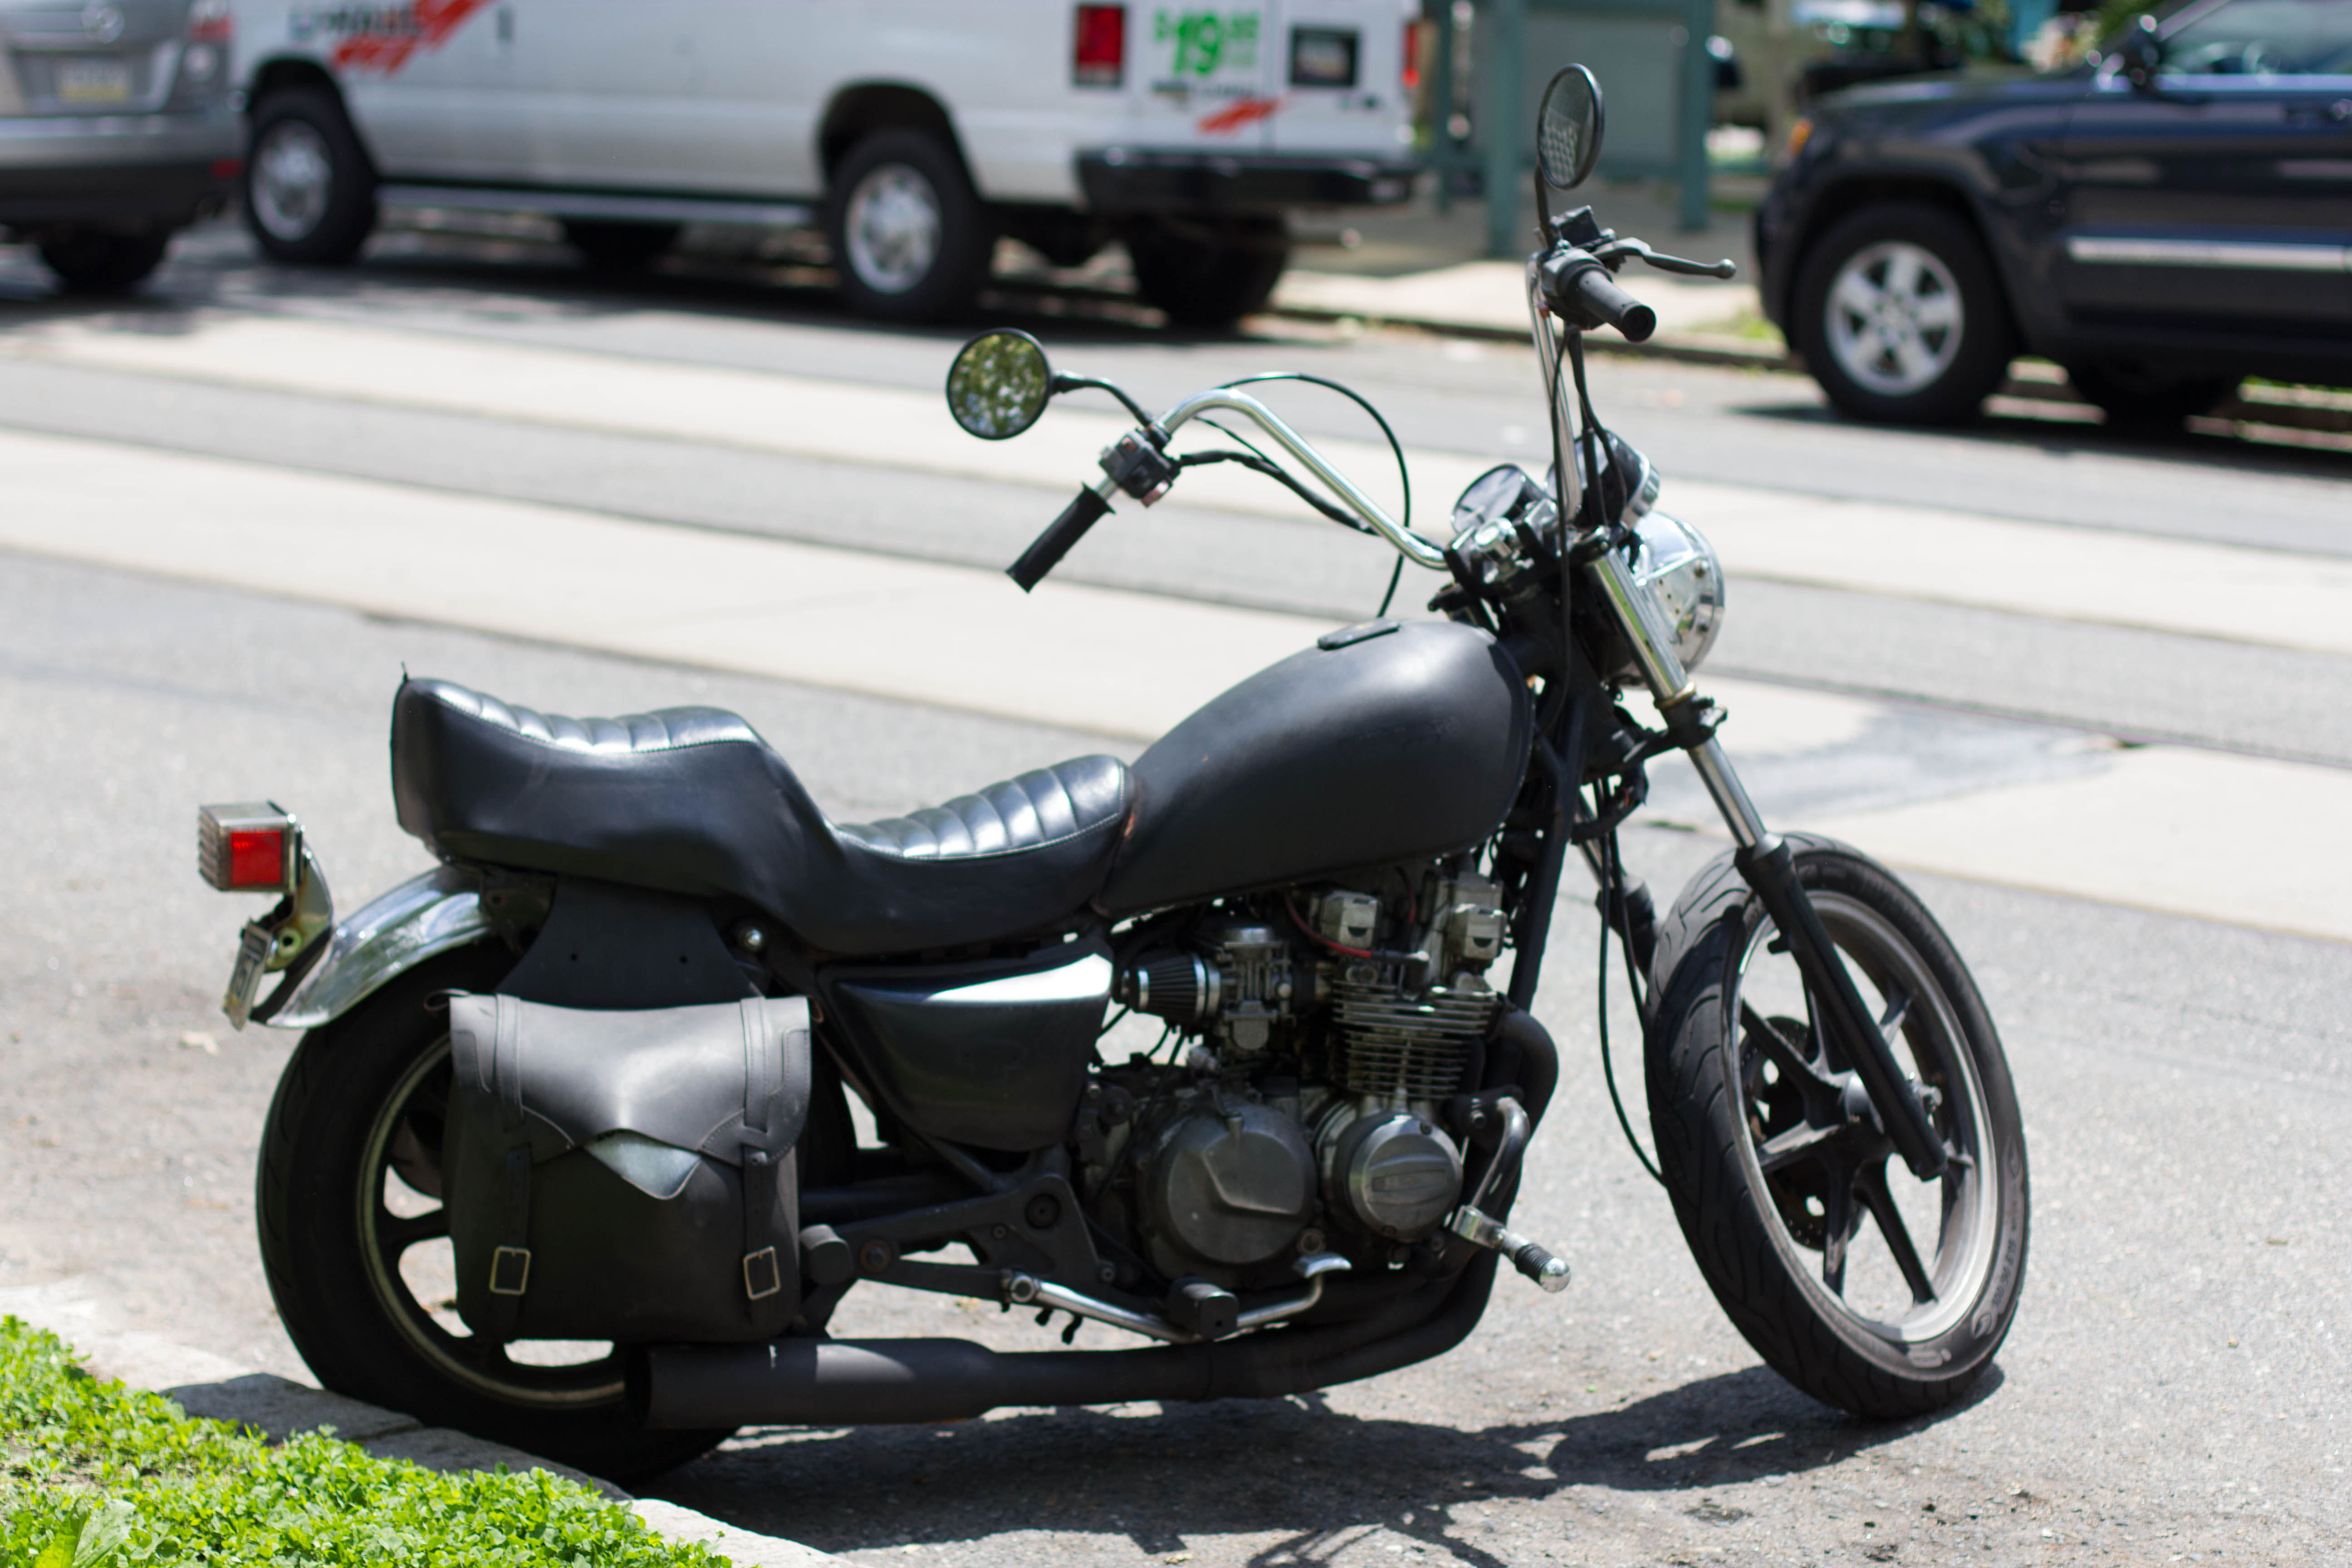 Motorcycle Bike Black Moto Parking